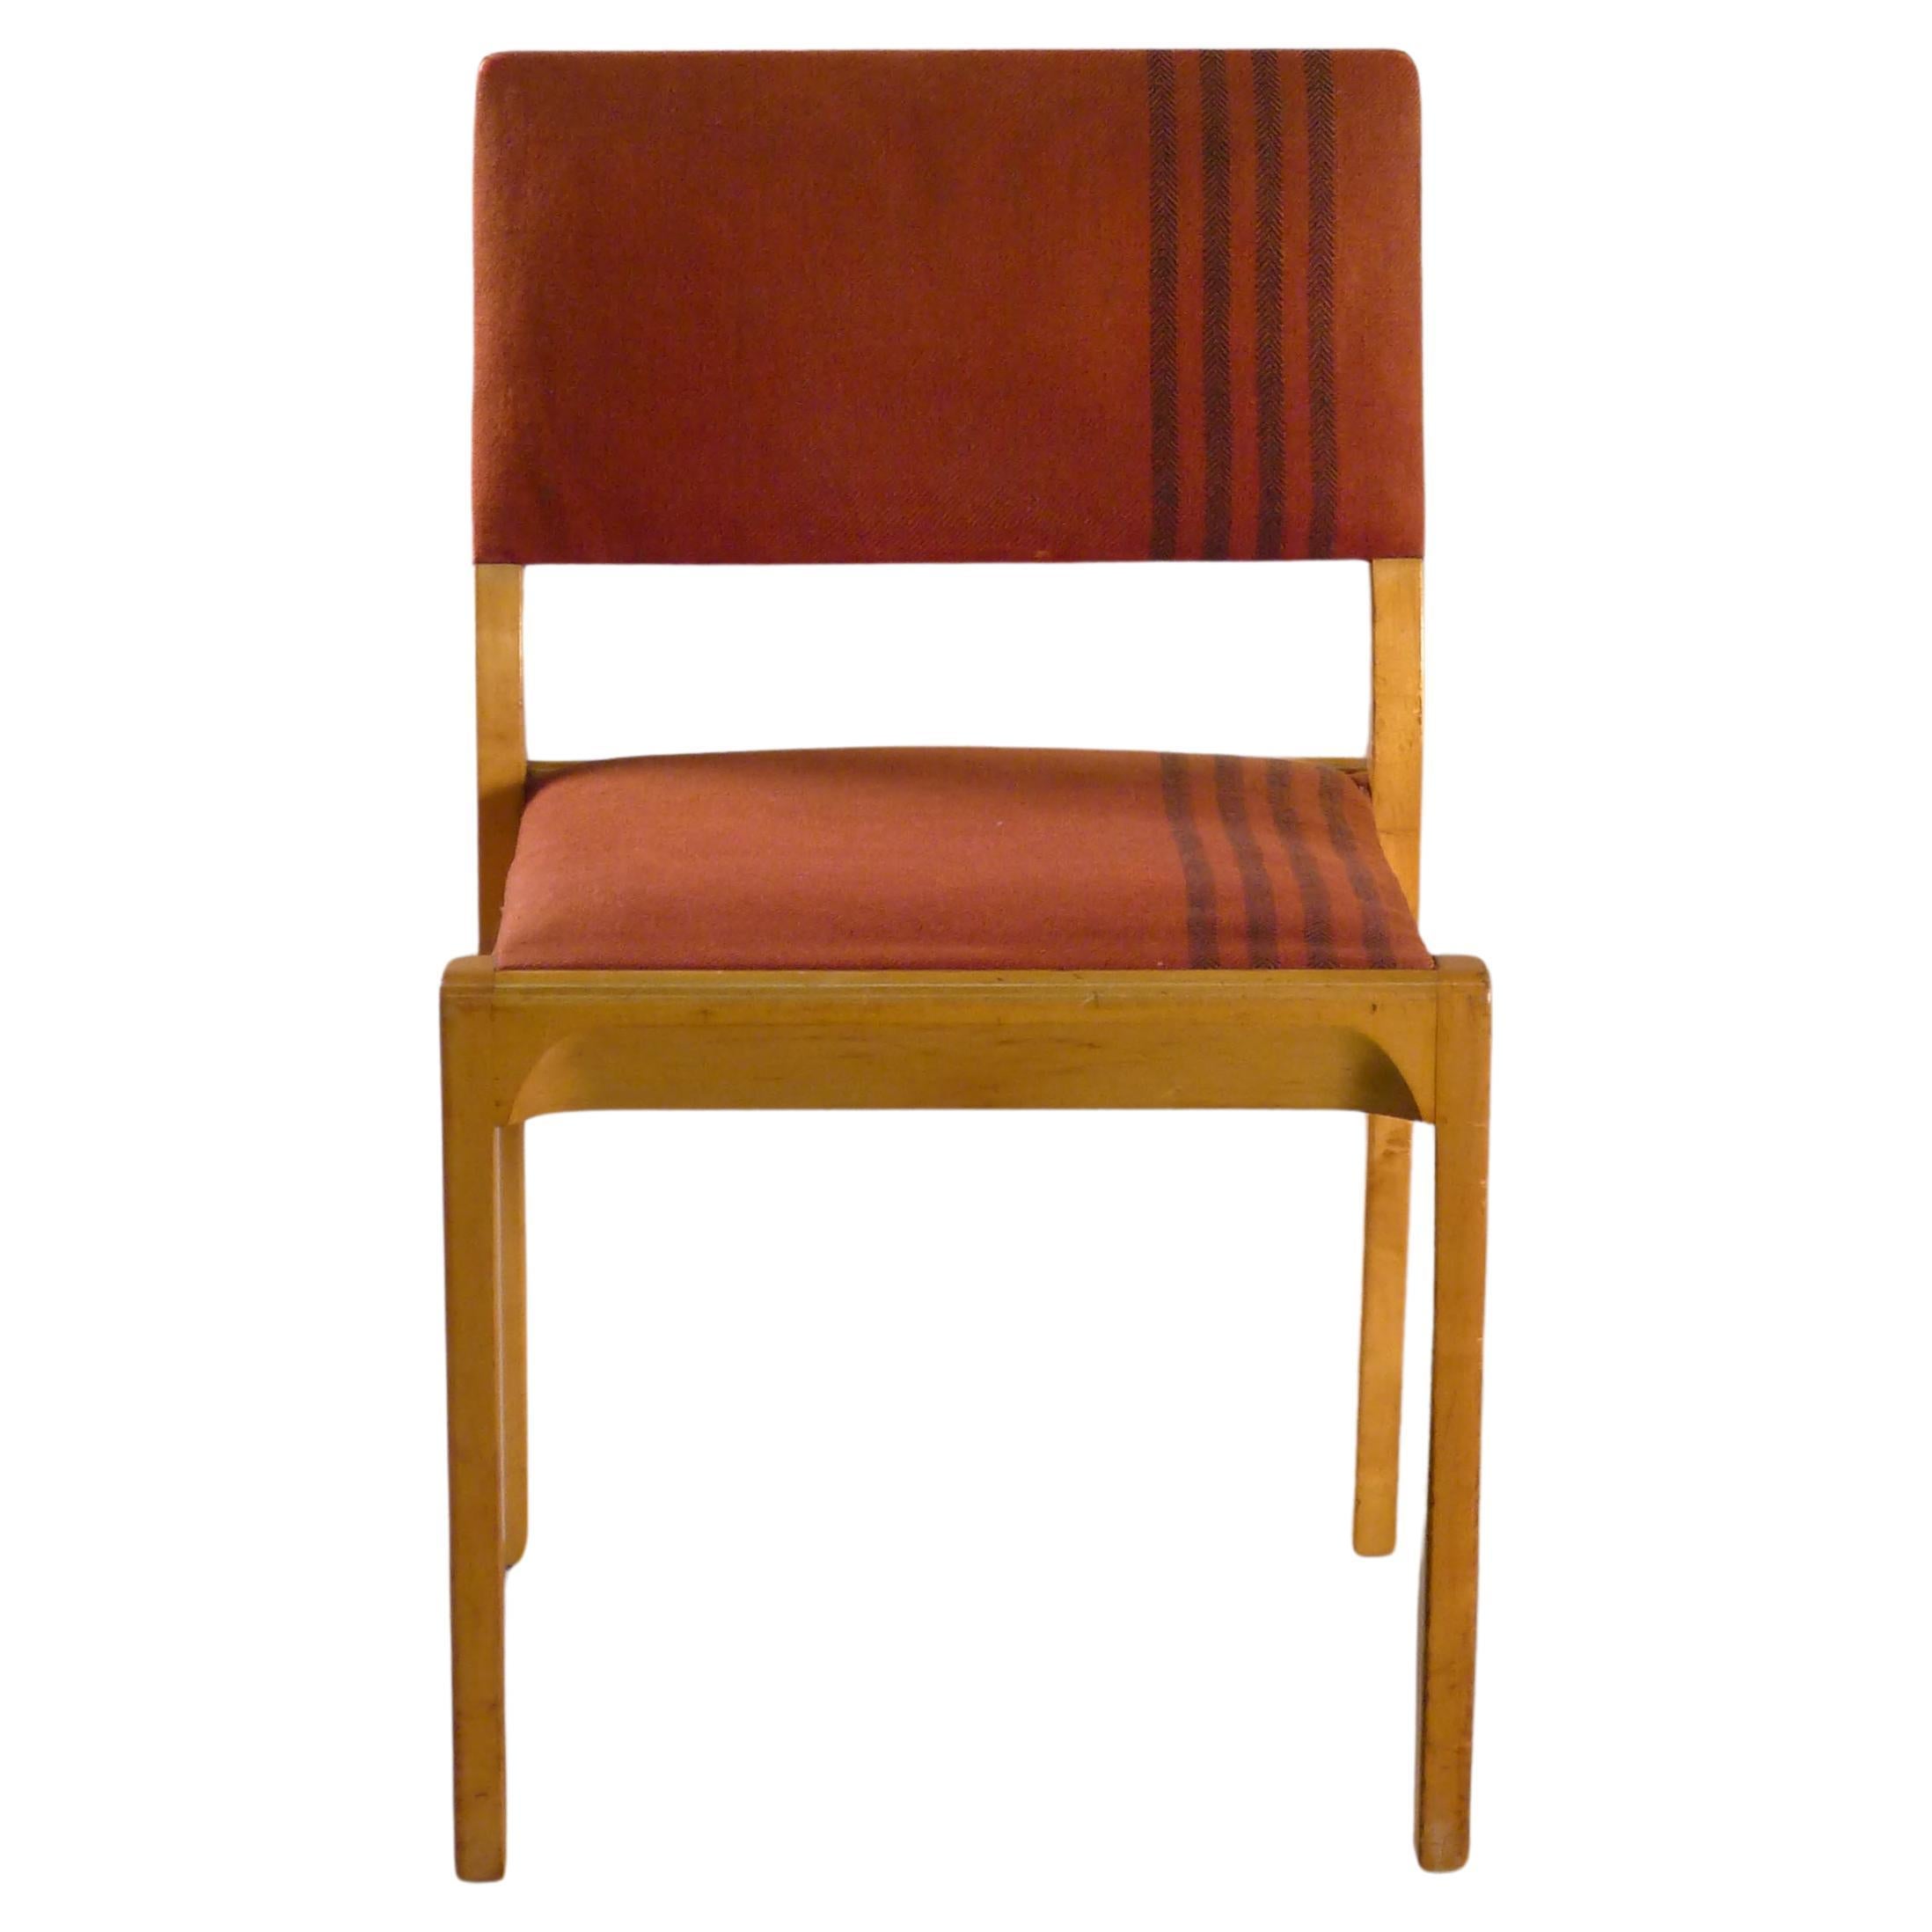 Chaise empilable Alvar Aalto modèle 611 de Finmar, tissu attribué à Aino Aalto